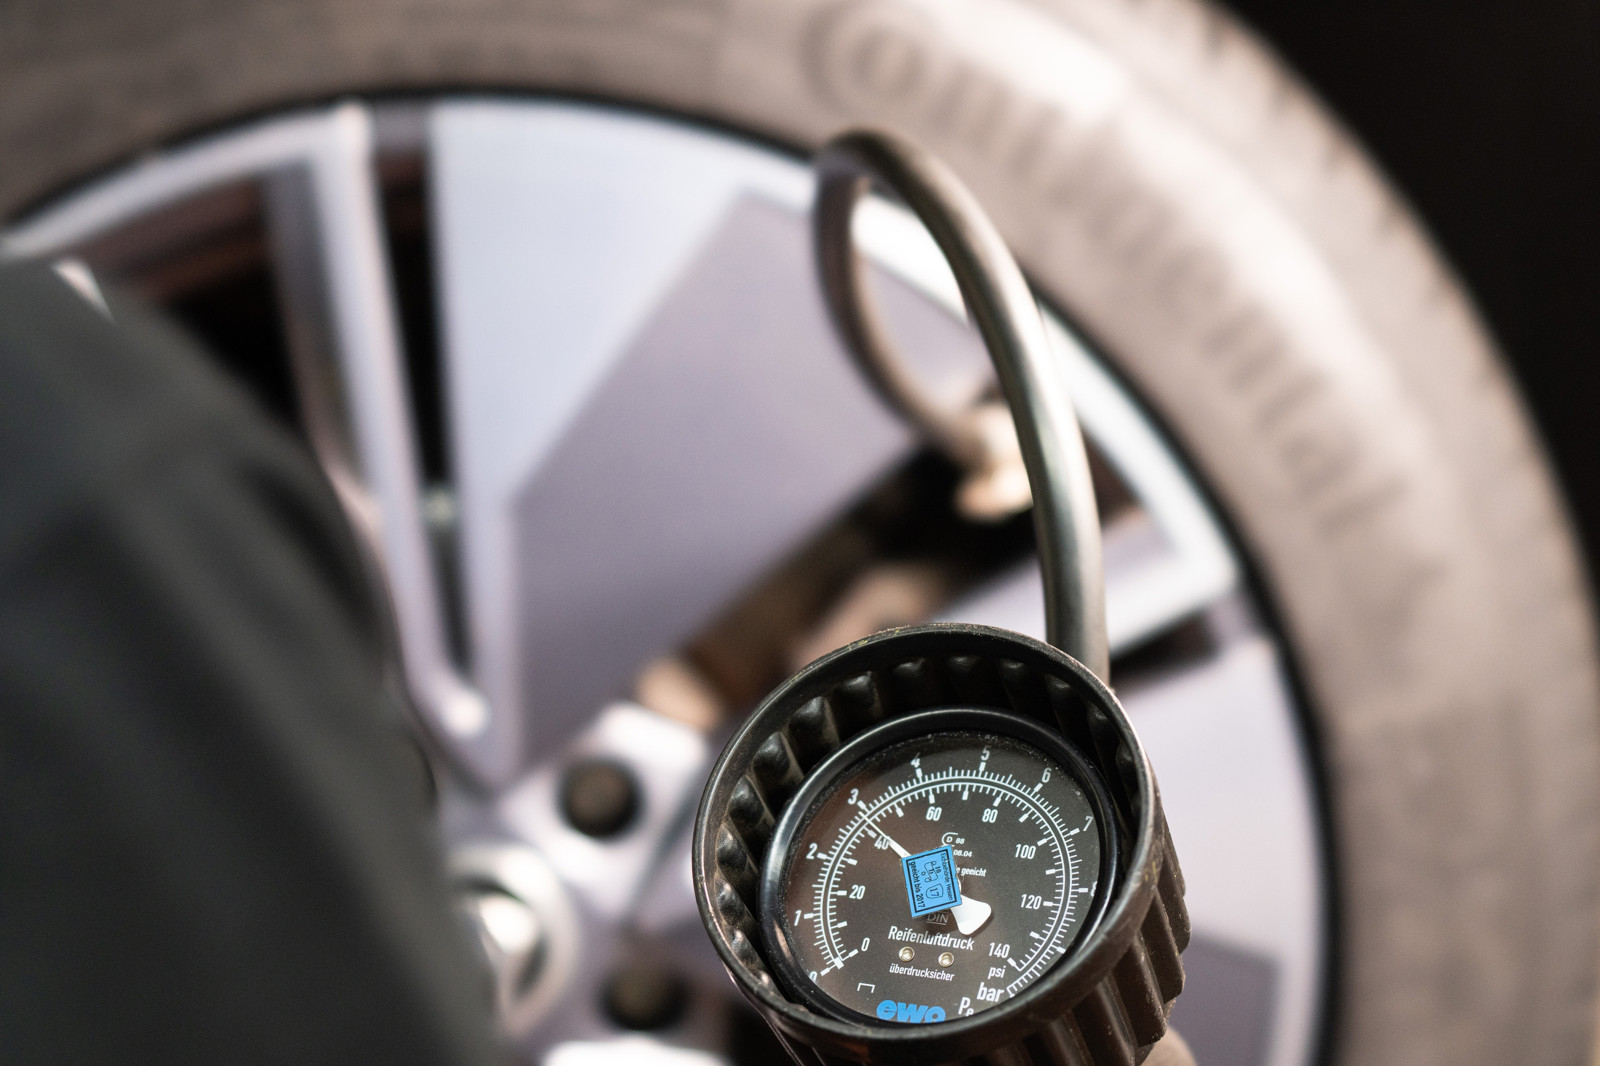 Eine niedriger Reifendruck kann zu verlängertem Bremsweg führen, deshalb sollte dieser regelmäßig überprüft werden.